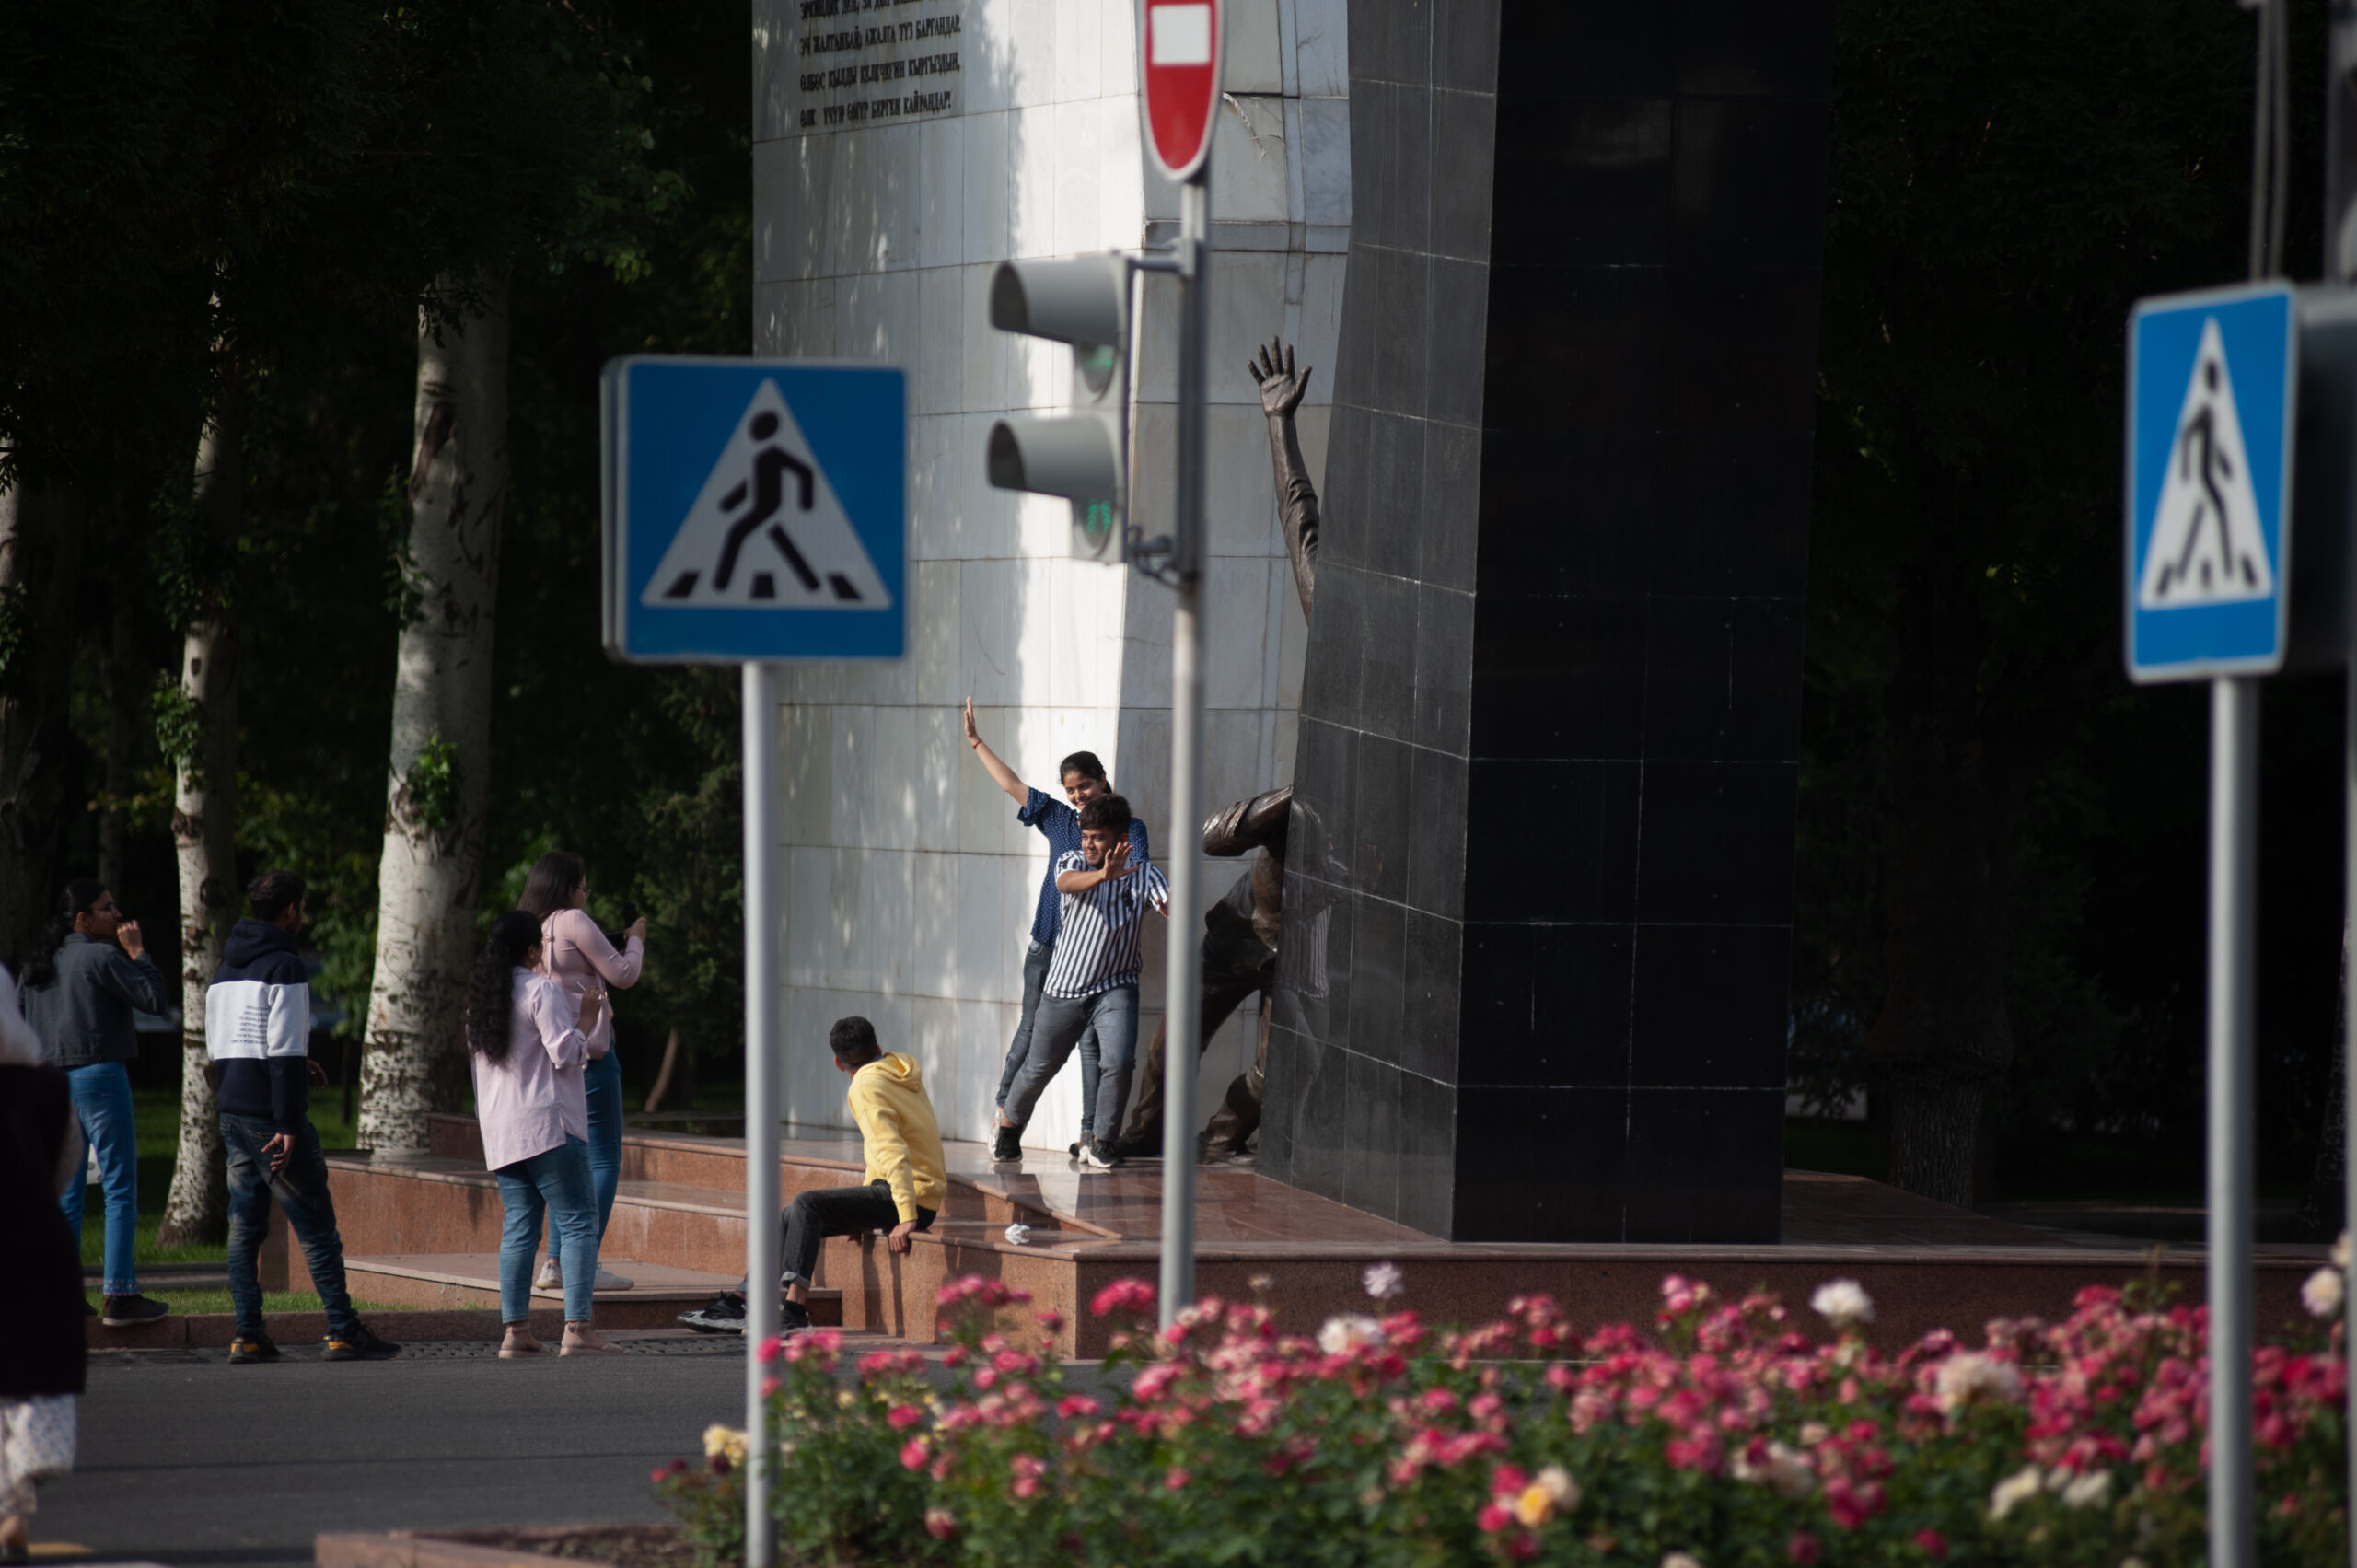 Бишкек - космополитичный город, в центре полно иностранцев, особенно много молодых людей из Индии и Пакистана, большинство из которых студенты-медики. Фото Константин Саломатин для Spektr.press